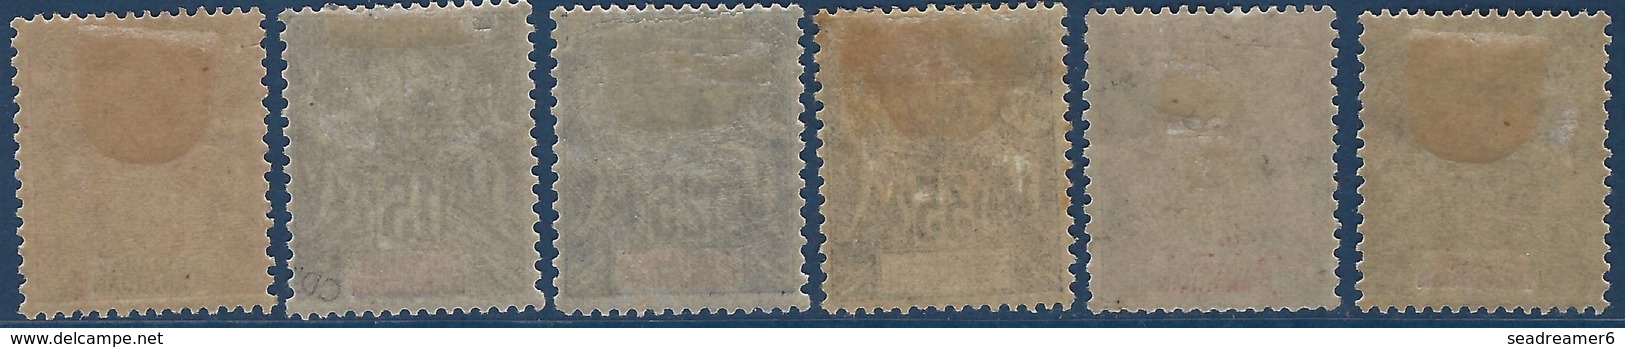 France Colonies Anjouan N°14 à 19*  Neufs Très Frais - Unused Stamps